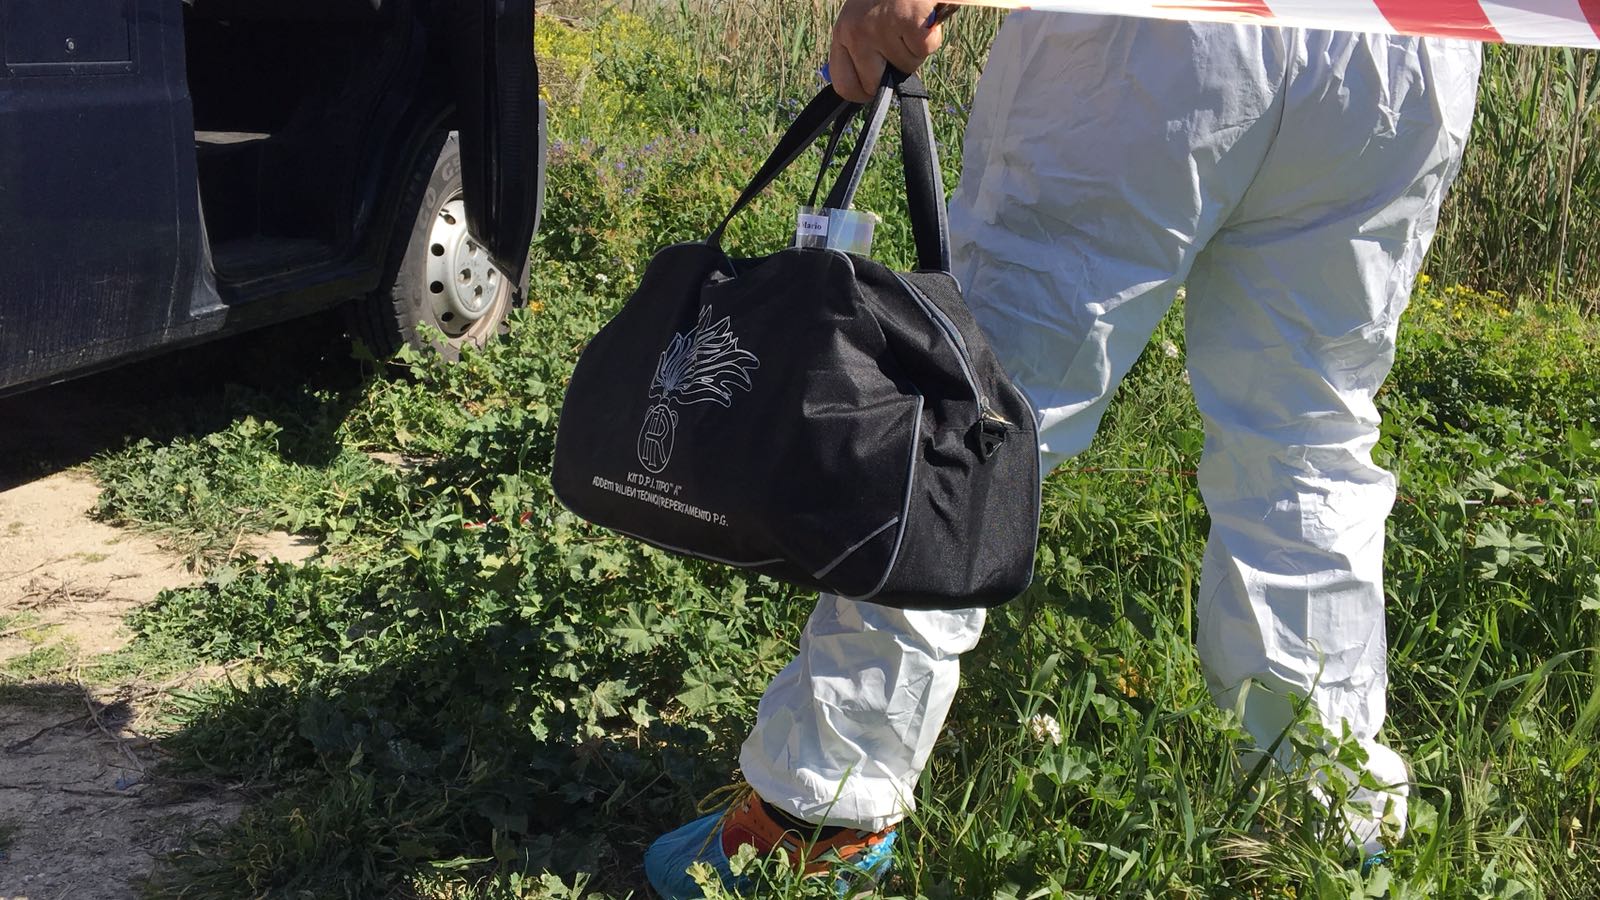 Cadavere trovato in una vasca di irrigazione, indagini ad Acate